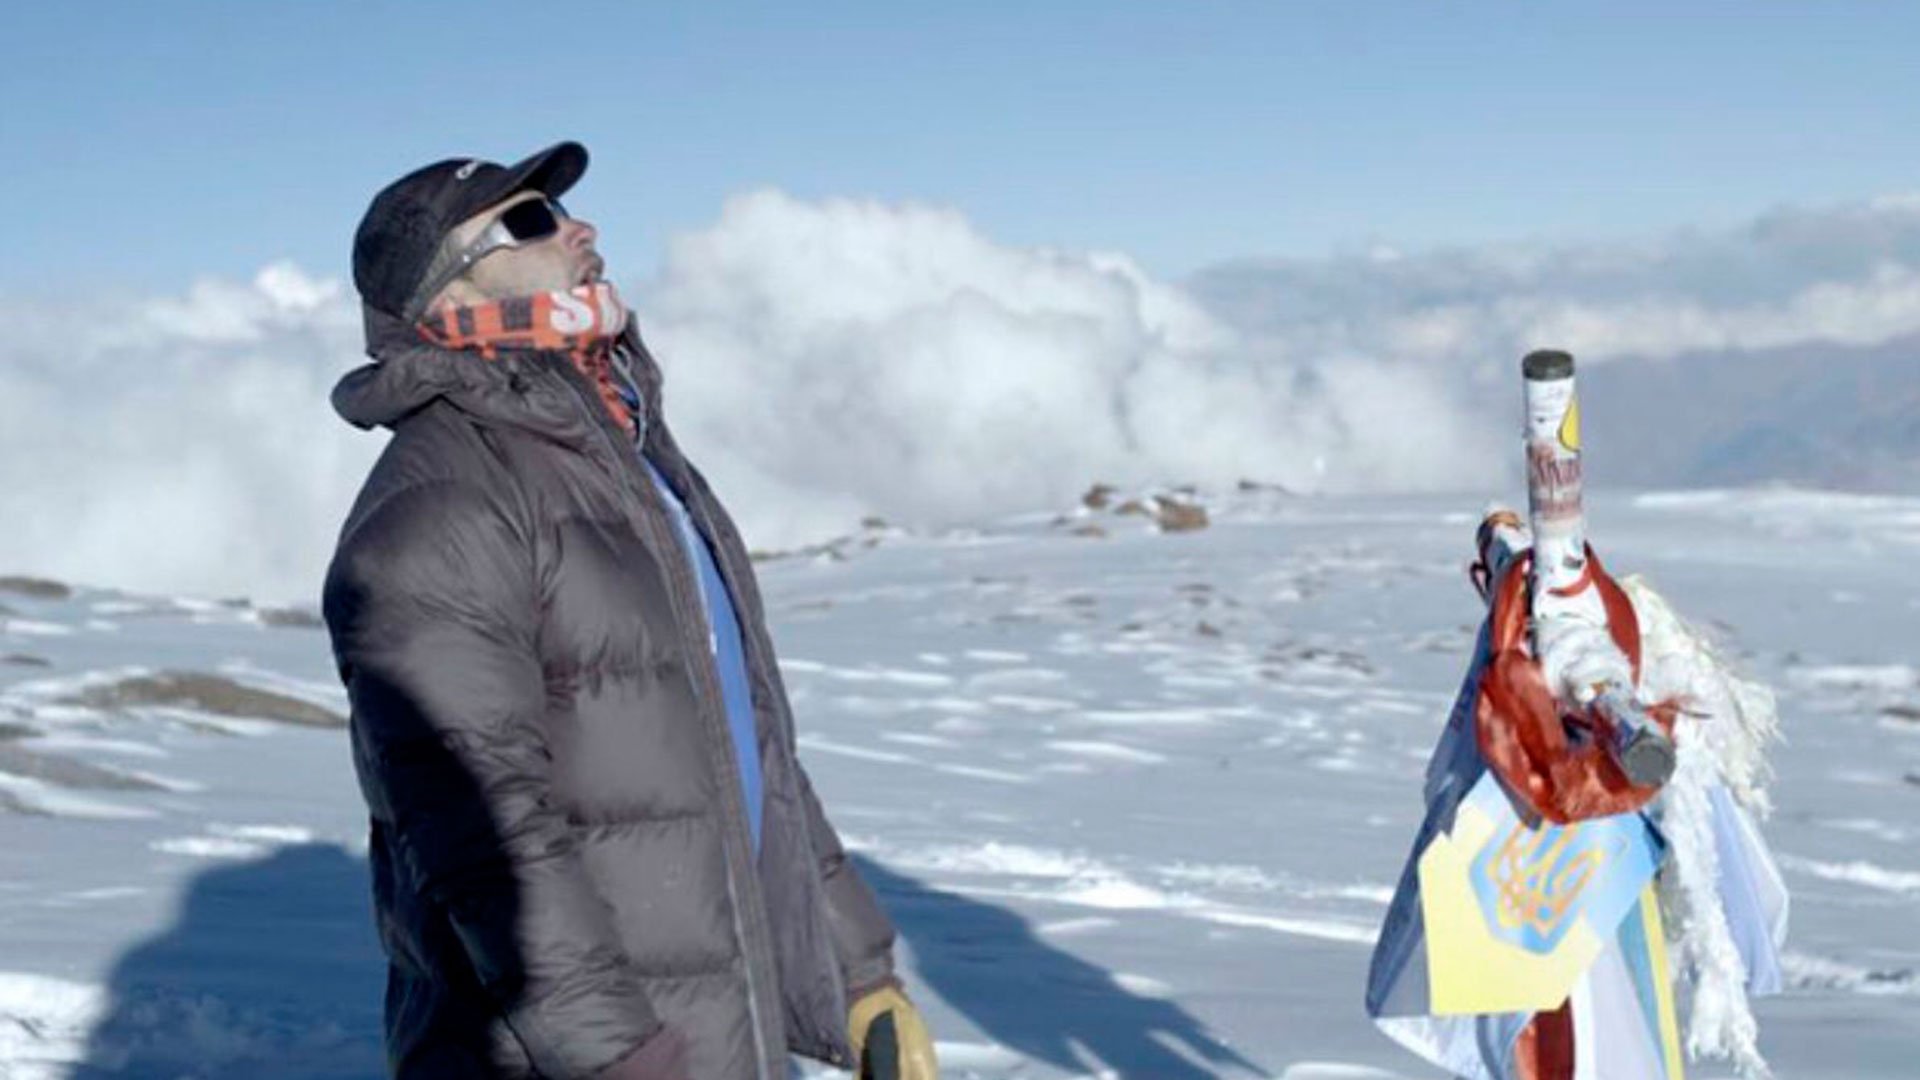 En ek 2018 lo invitaron a ser parte del Summit Aconcagua, una expedición para hacer cumbre en la montaña más alta de la Argentina junto a otros deportistas destacados